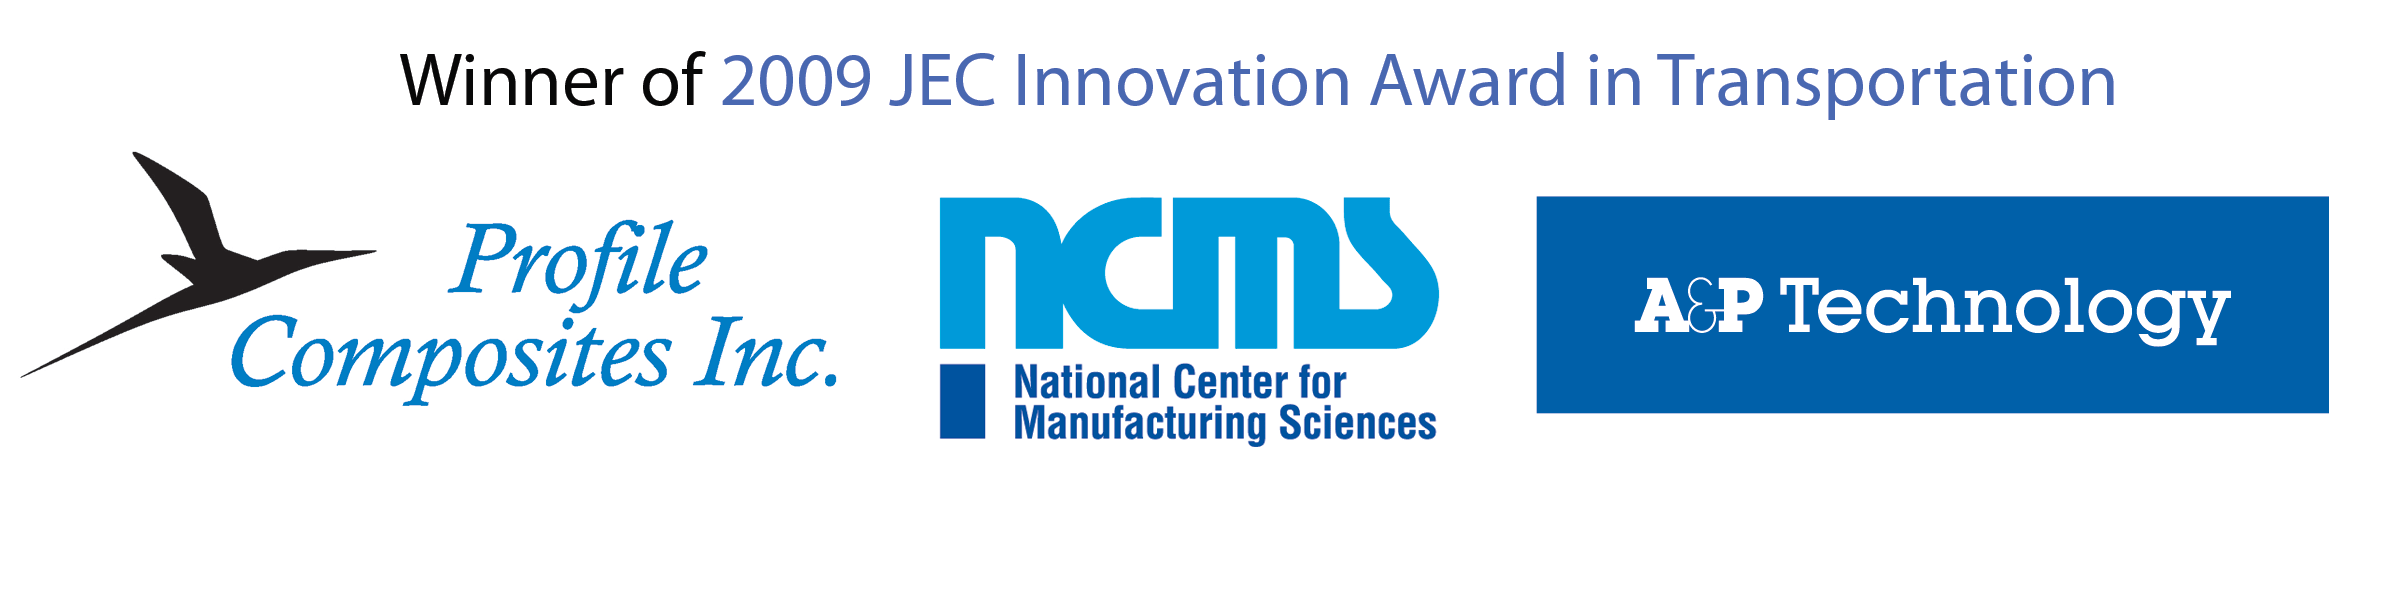 JEC innovation award